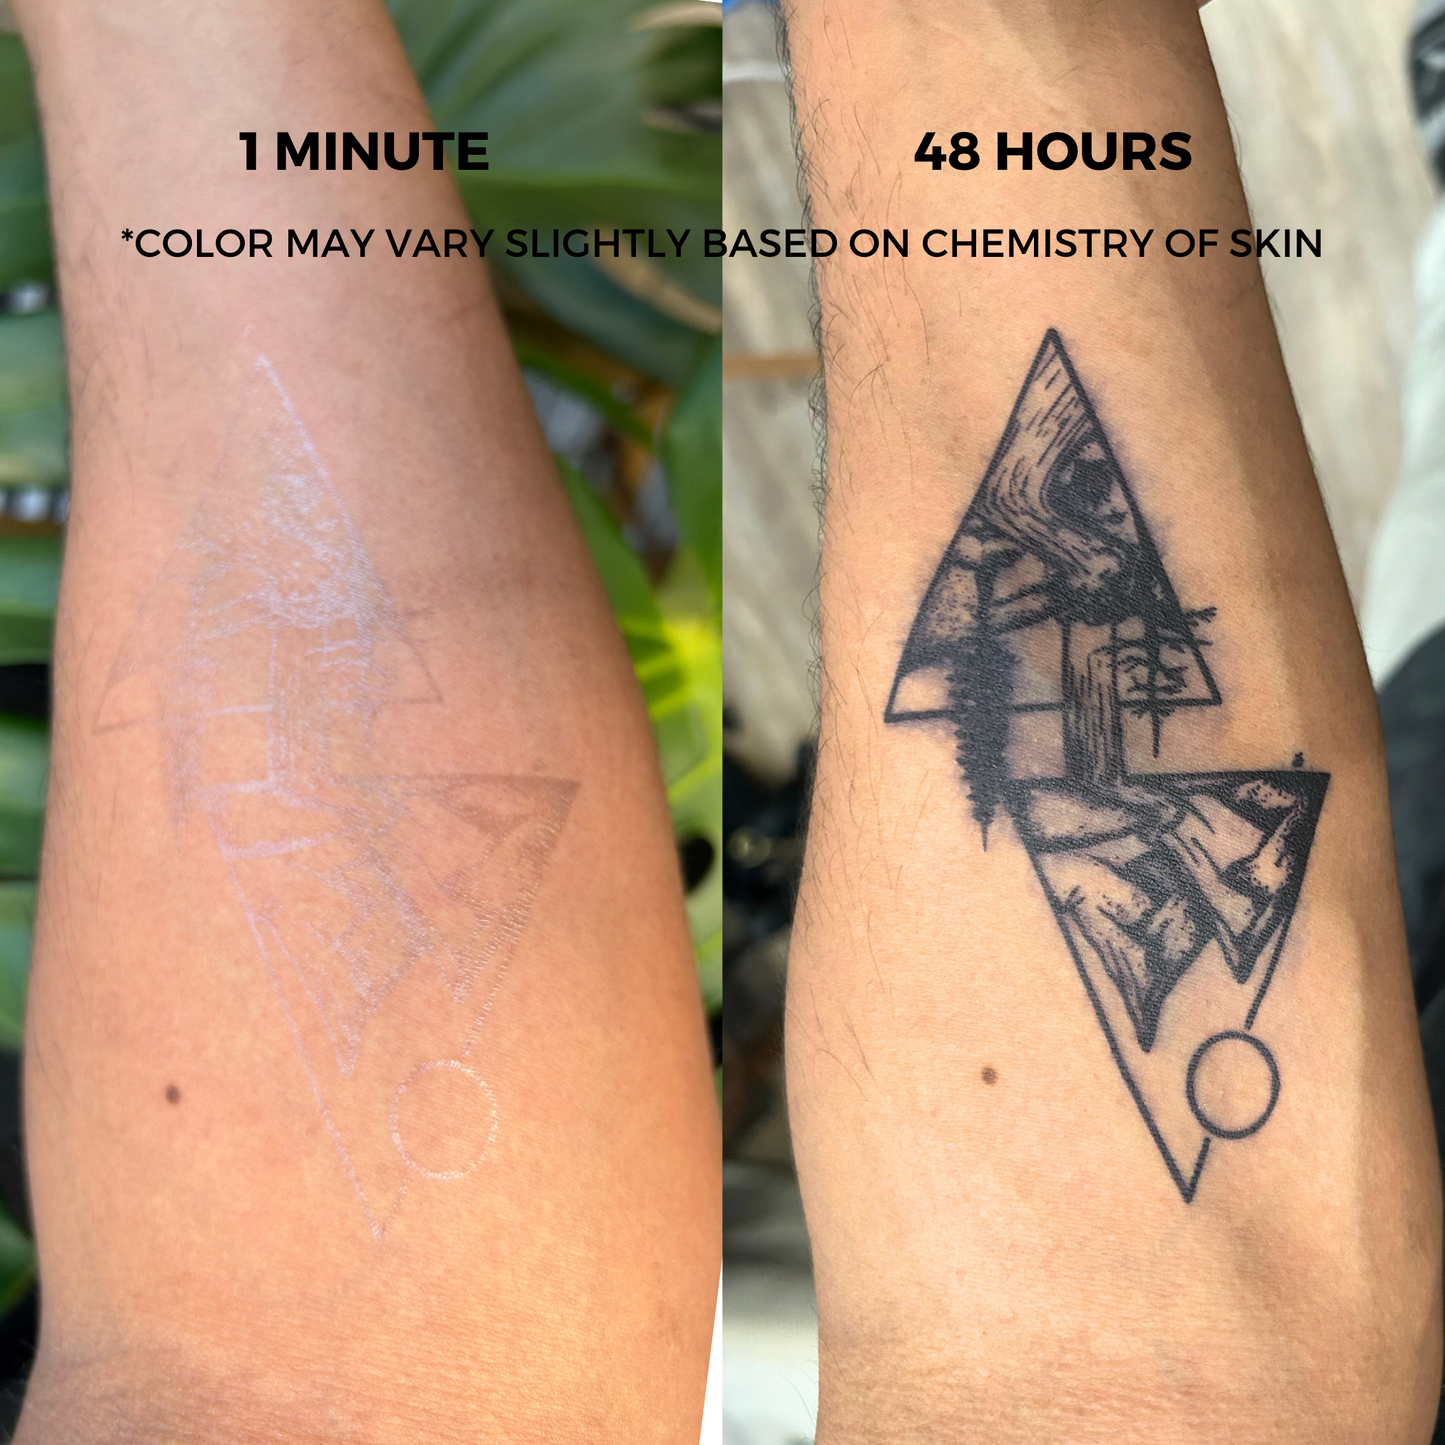 Garden Flower Tattoo | 2 Week Temporary Tattoo | Semi Permanent Tattoo | Plant Based Vegan Tattoo | Fem Tattoo | Flower Tattoo | Festival Tattoo | Gift Idea | Boho Tattoo | Bohemian Tattoo